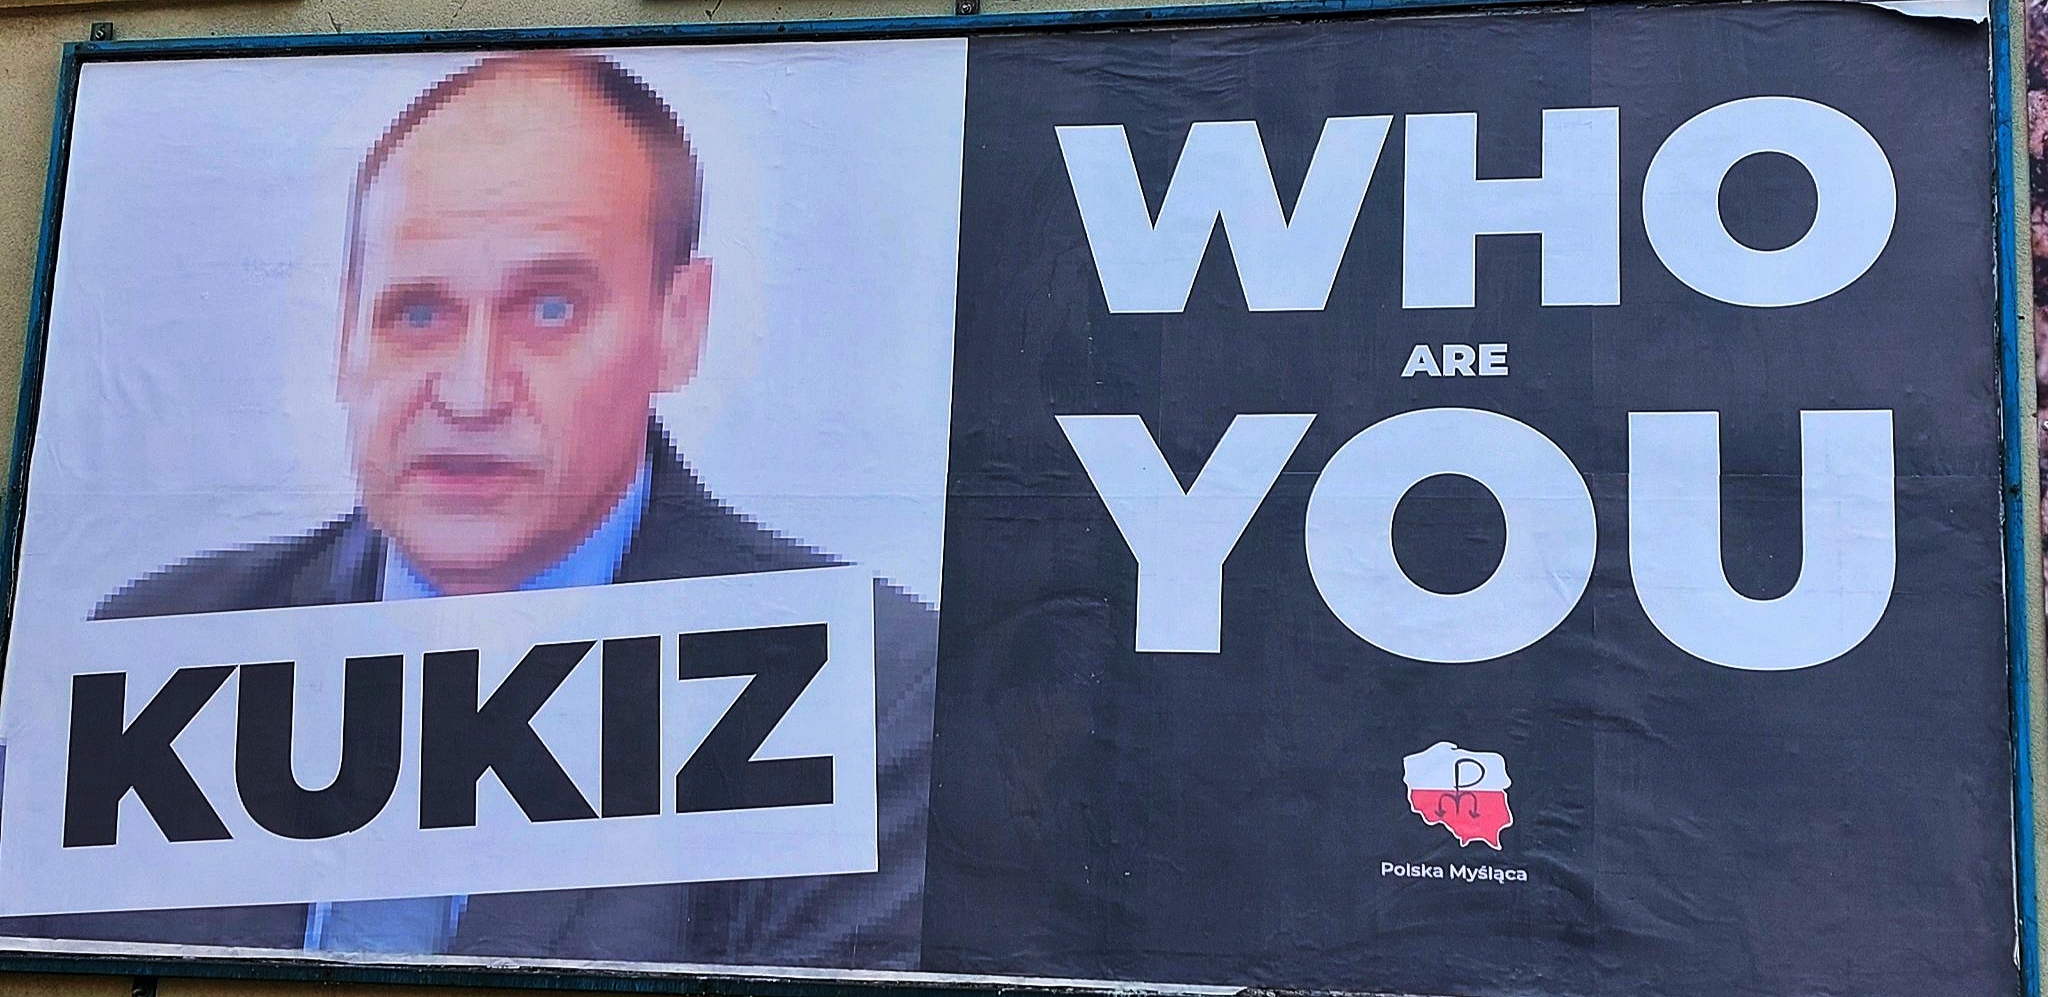 Paweł Kukiz – wzlot i upadek muzycznego polityka lub politycznego muzyka